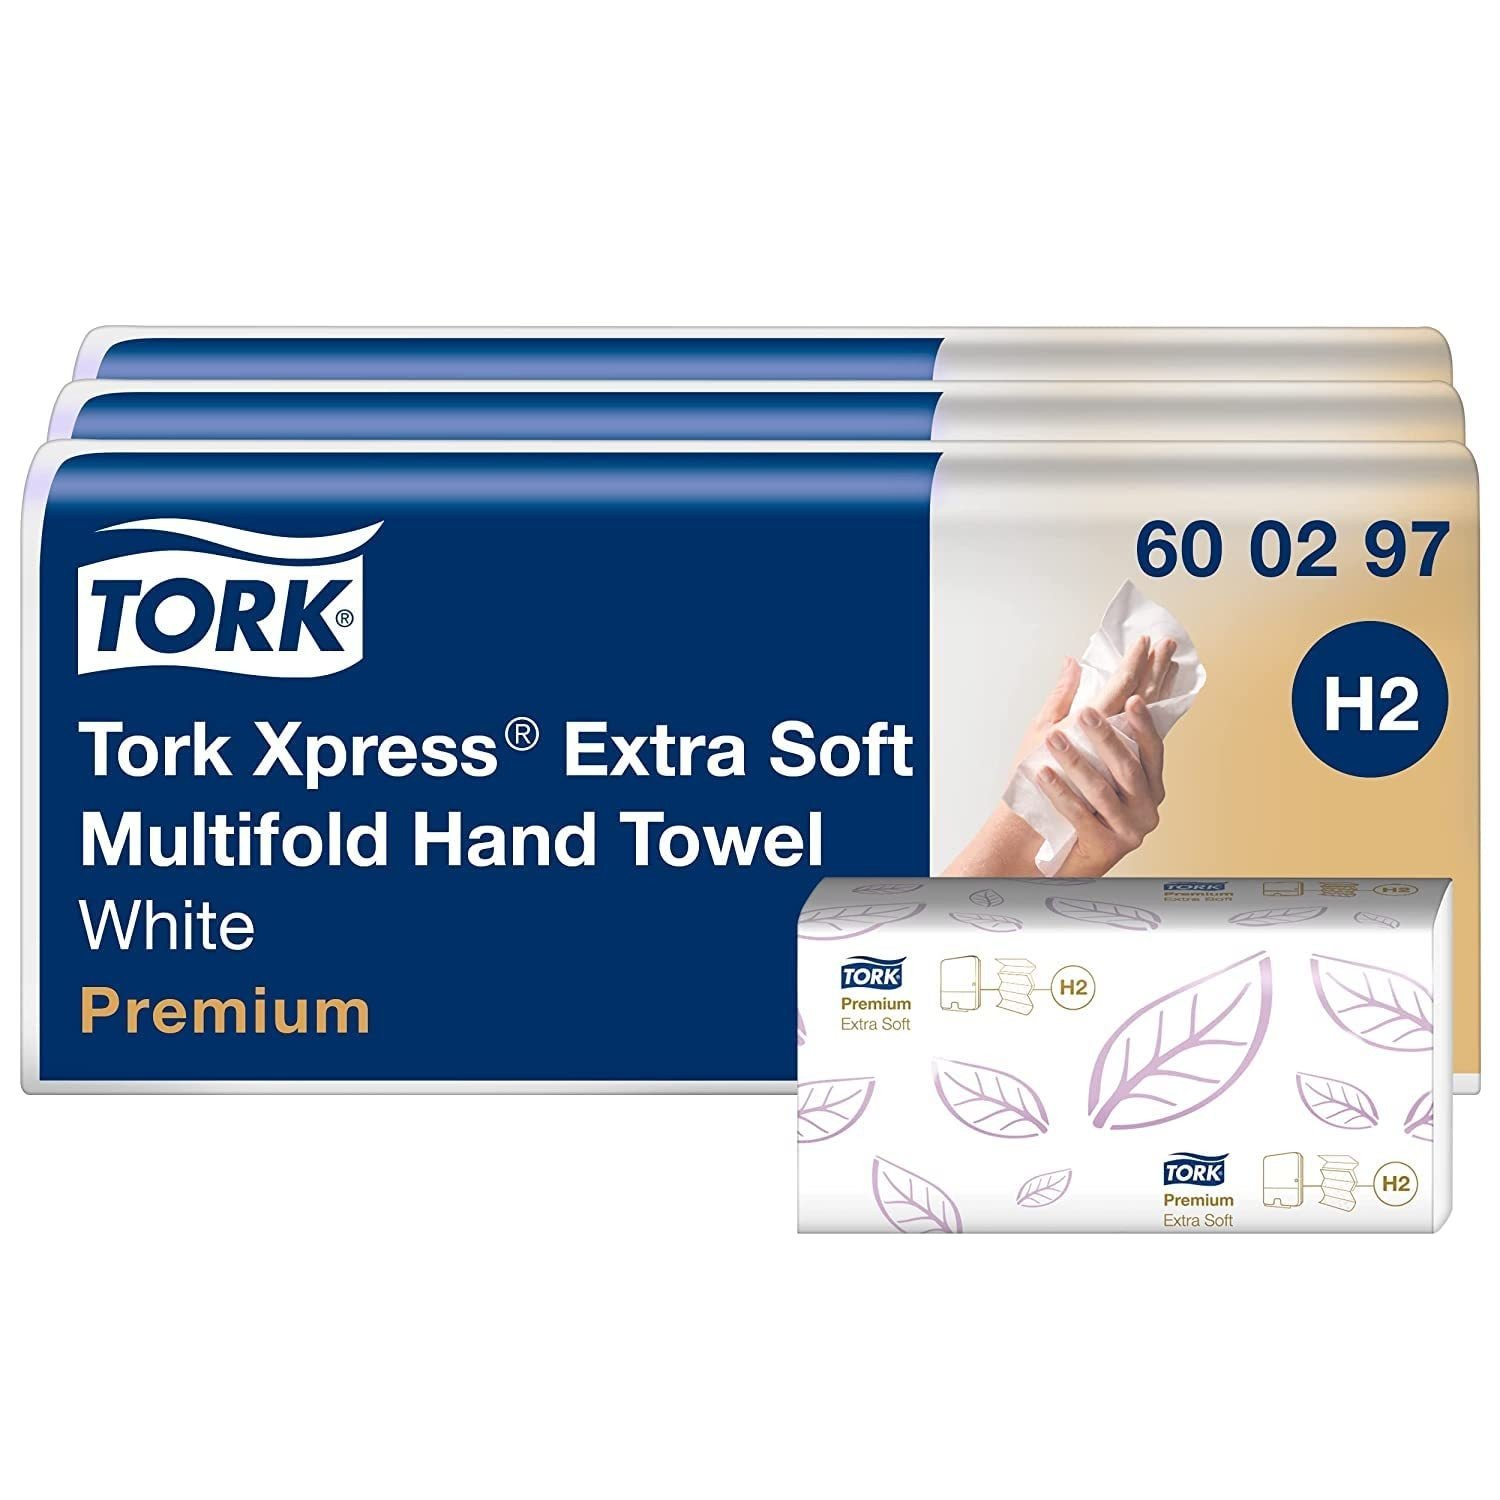 Papírové ručníky Tork Xpress 600297 7x100 ks